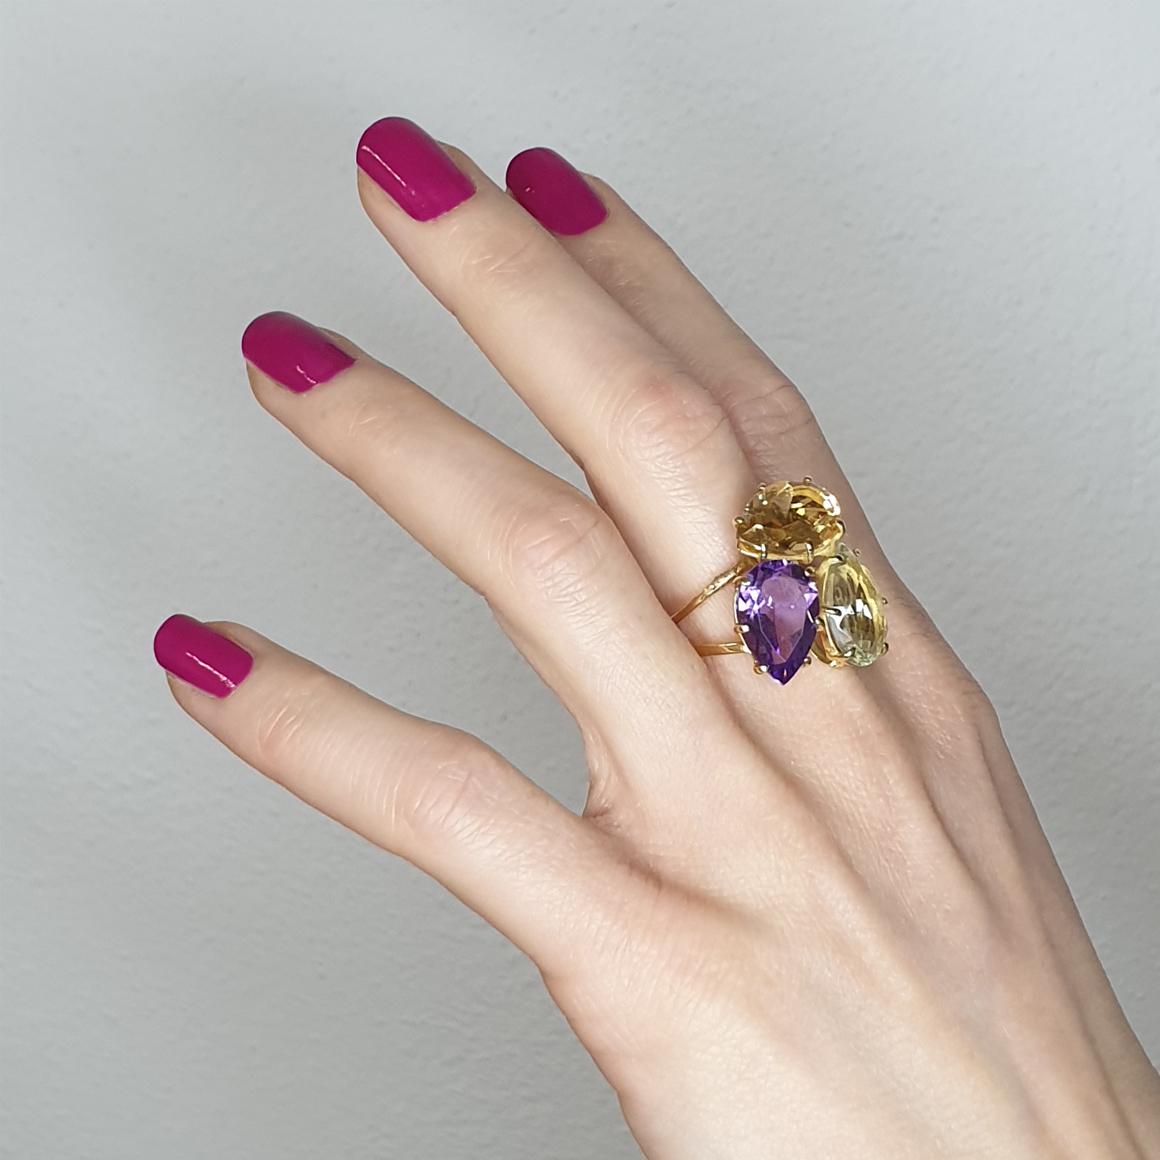 Die Verflechtung der gleichen Formen mit verschiedenen Farben ergibt einen sehr trendigen Ring, italienischer Kunstschmuck von Stanoppi Jewellery seit 1948.

Ring aus 18k Roségold mit Amethyst (Tropfenschliff, Größe: 10x15 mm), Citrin